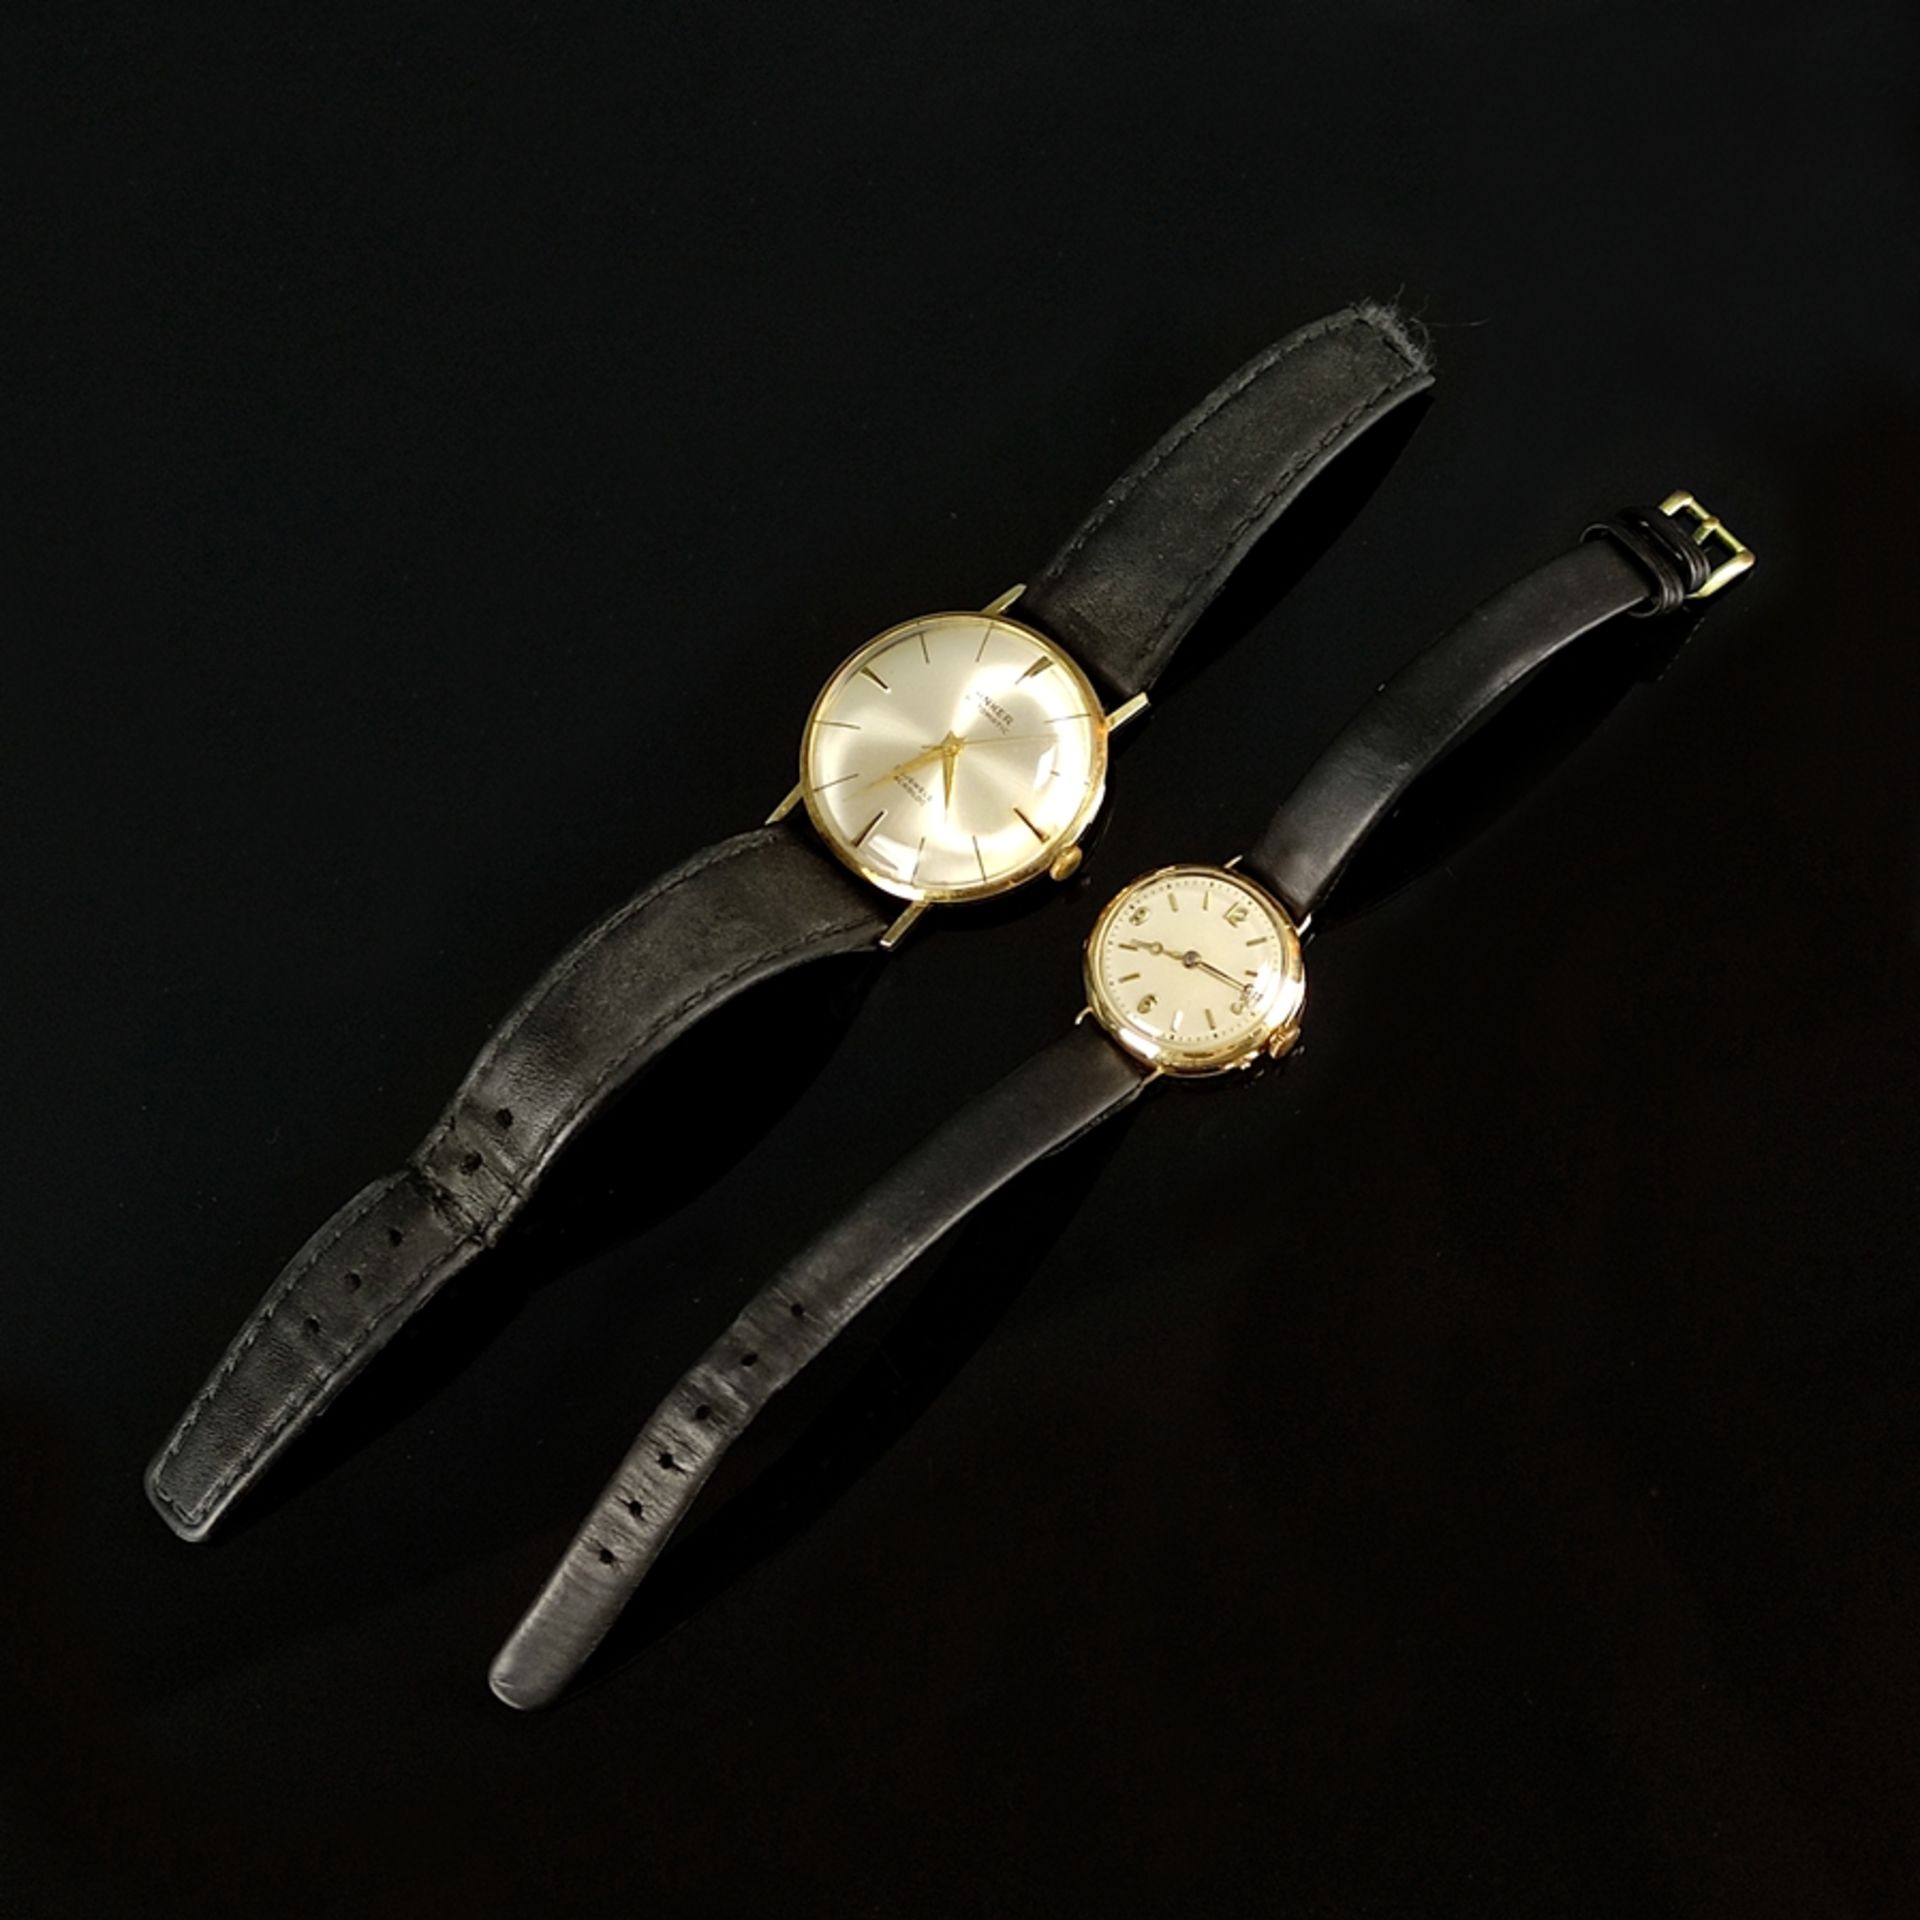 Zwei Armbanduhren, bestehend aus Anker Automatik, rundes Ziffernblatt, Durchmesser ohne Krone 34mm, - Bild 2 aus 4